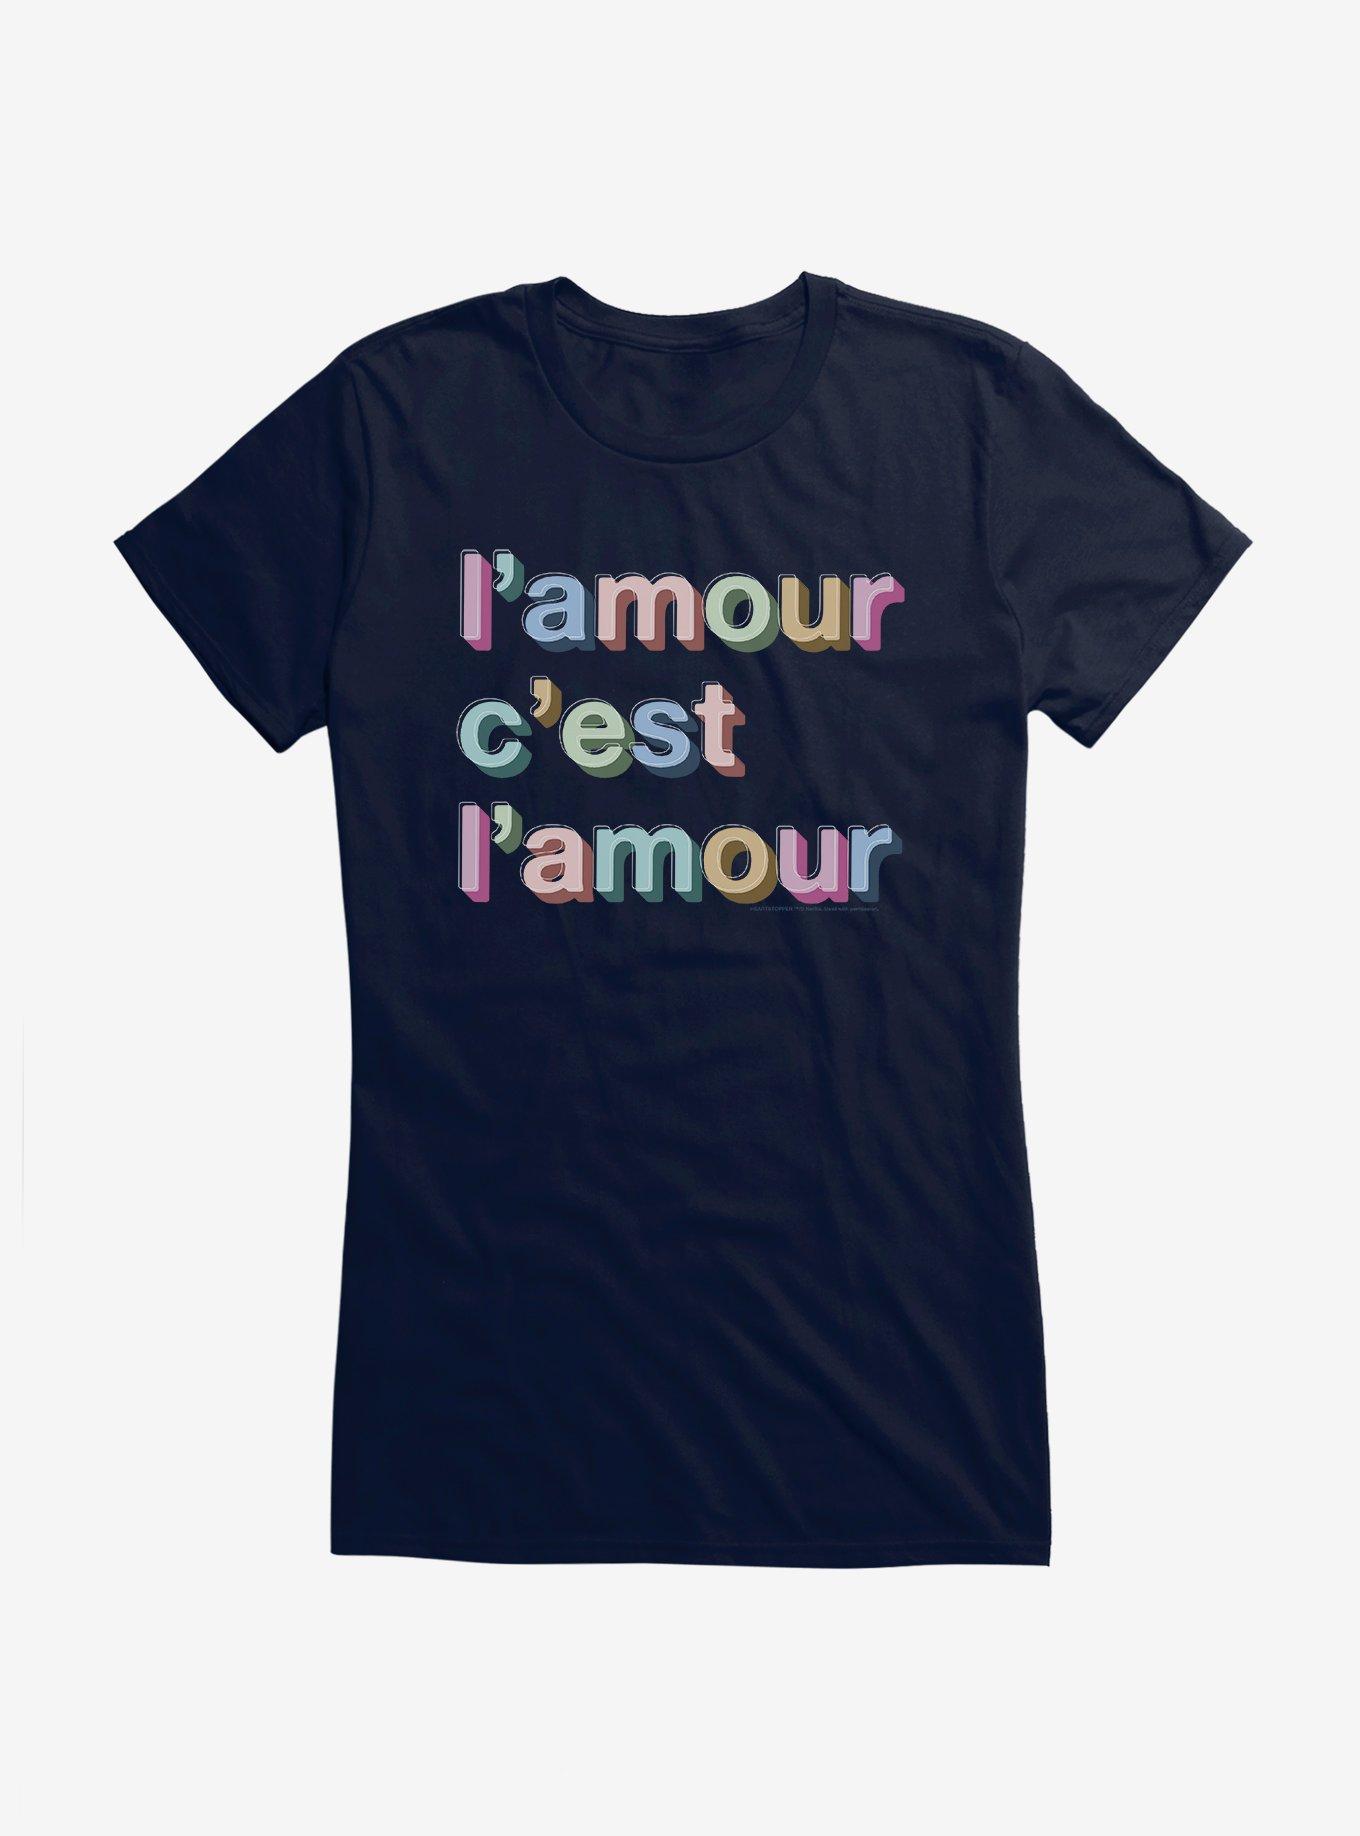 Heartstopper L'amour C'est Girls T-Shirt